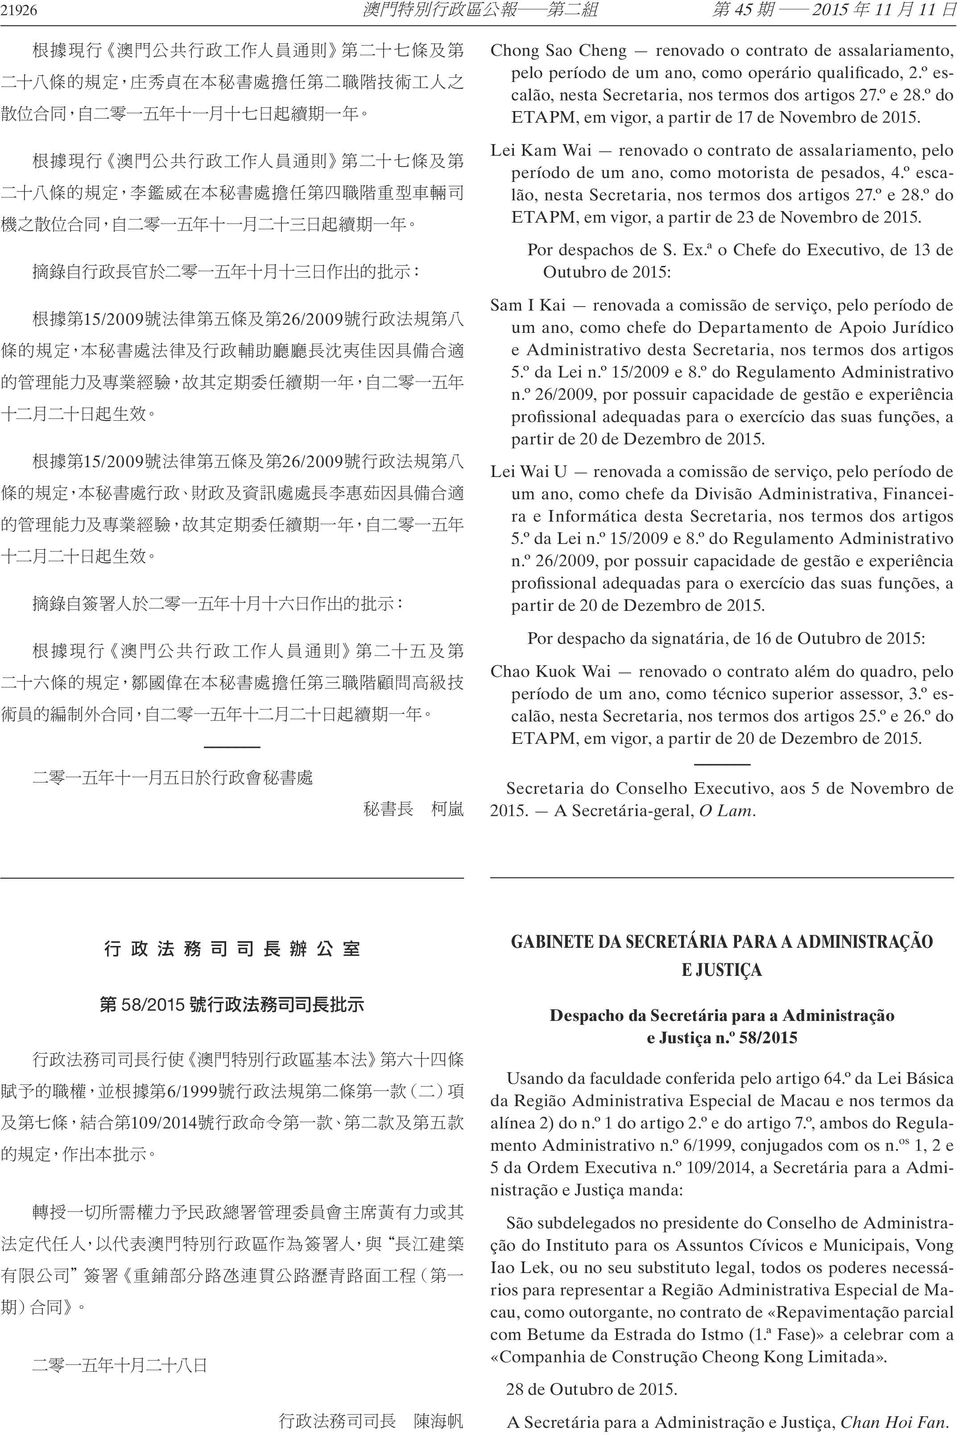 Lei Kam Wai renovado o contrato de assalariamento, pelo período de um ano, como motorista de pesados, 4.º escalão, nesta Secretaria, nos termos dos artigos 27.º e 28.